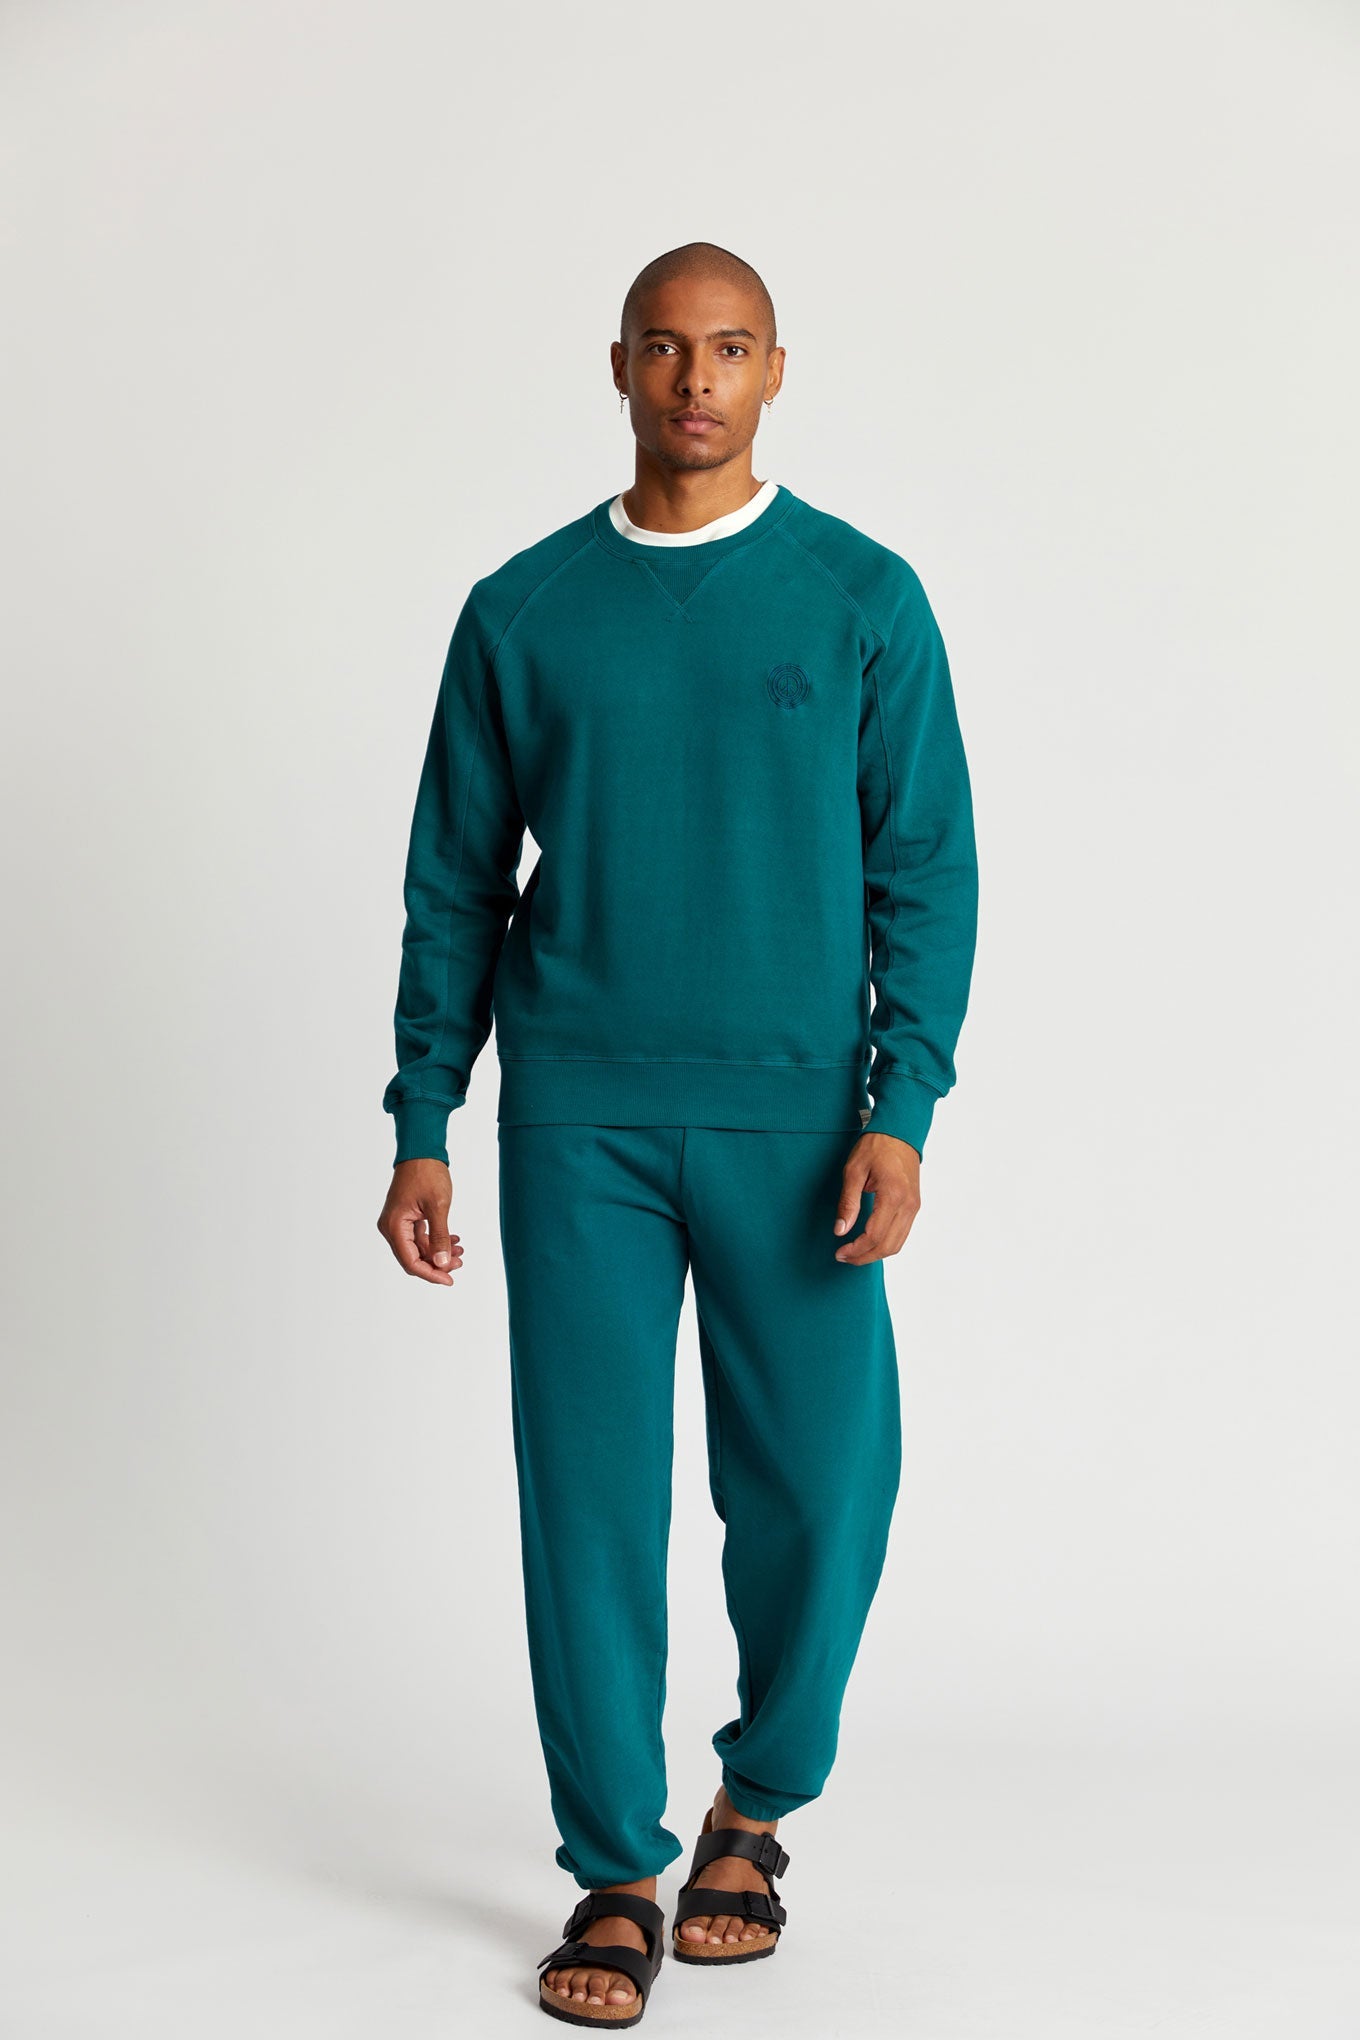 Pantalon de jogging ADAM vert foncé en coton biologique de Komodo